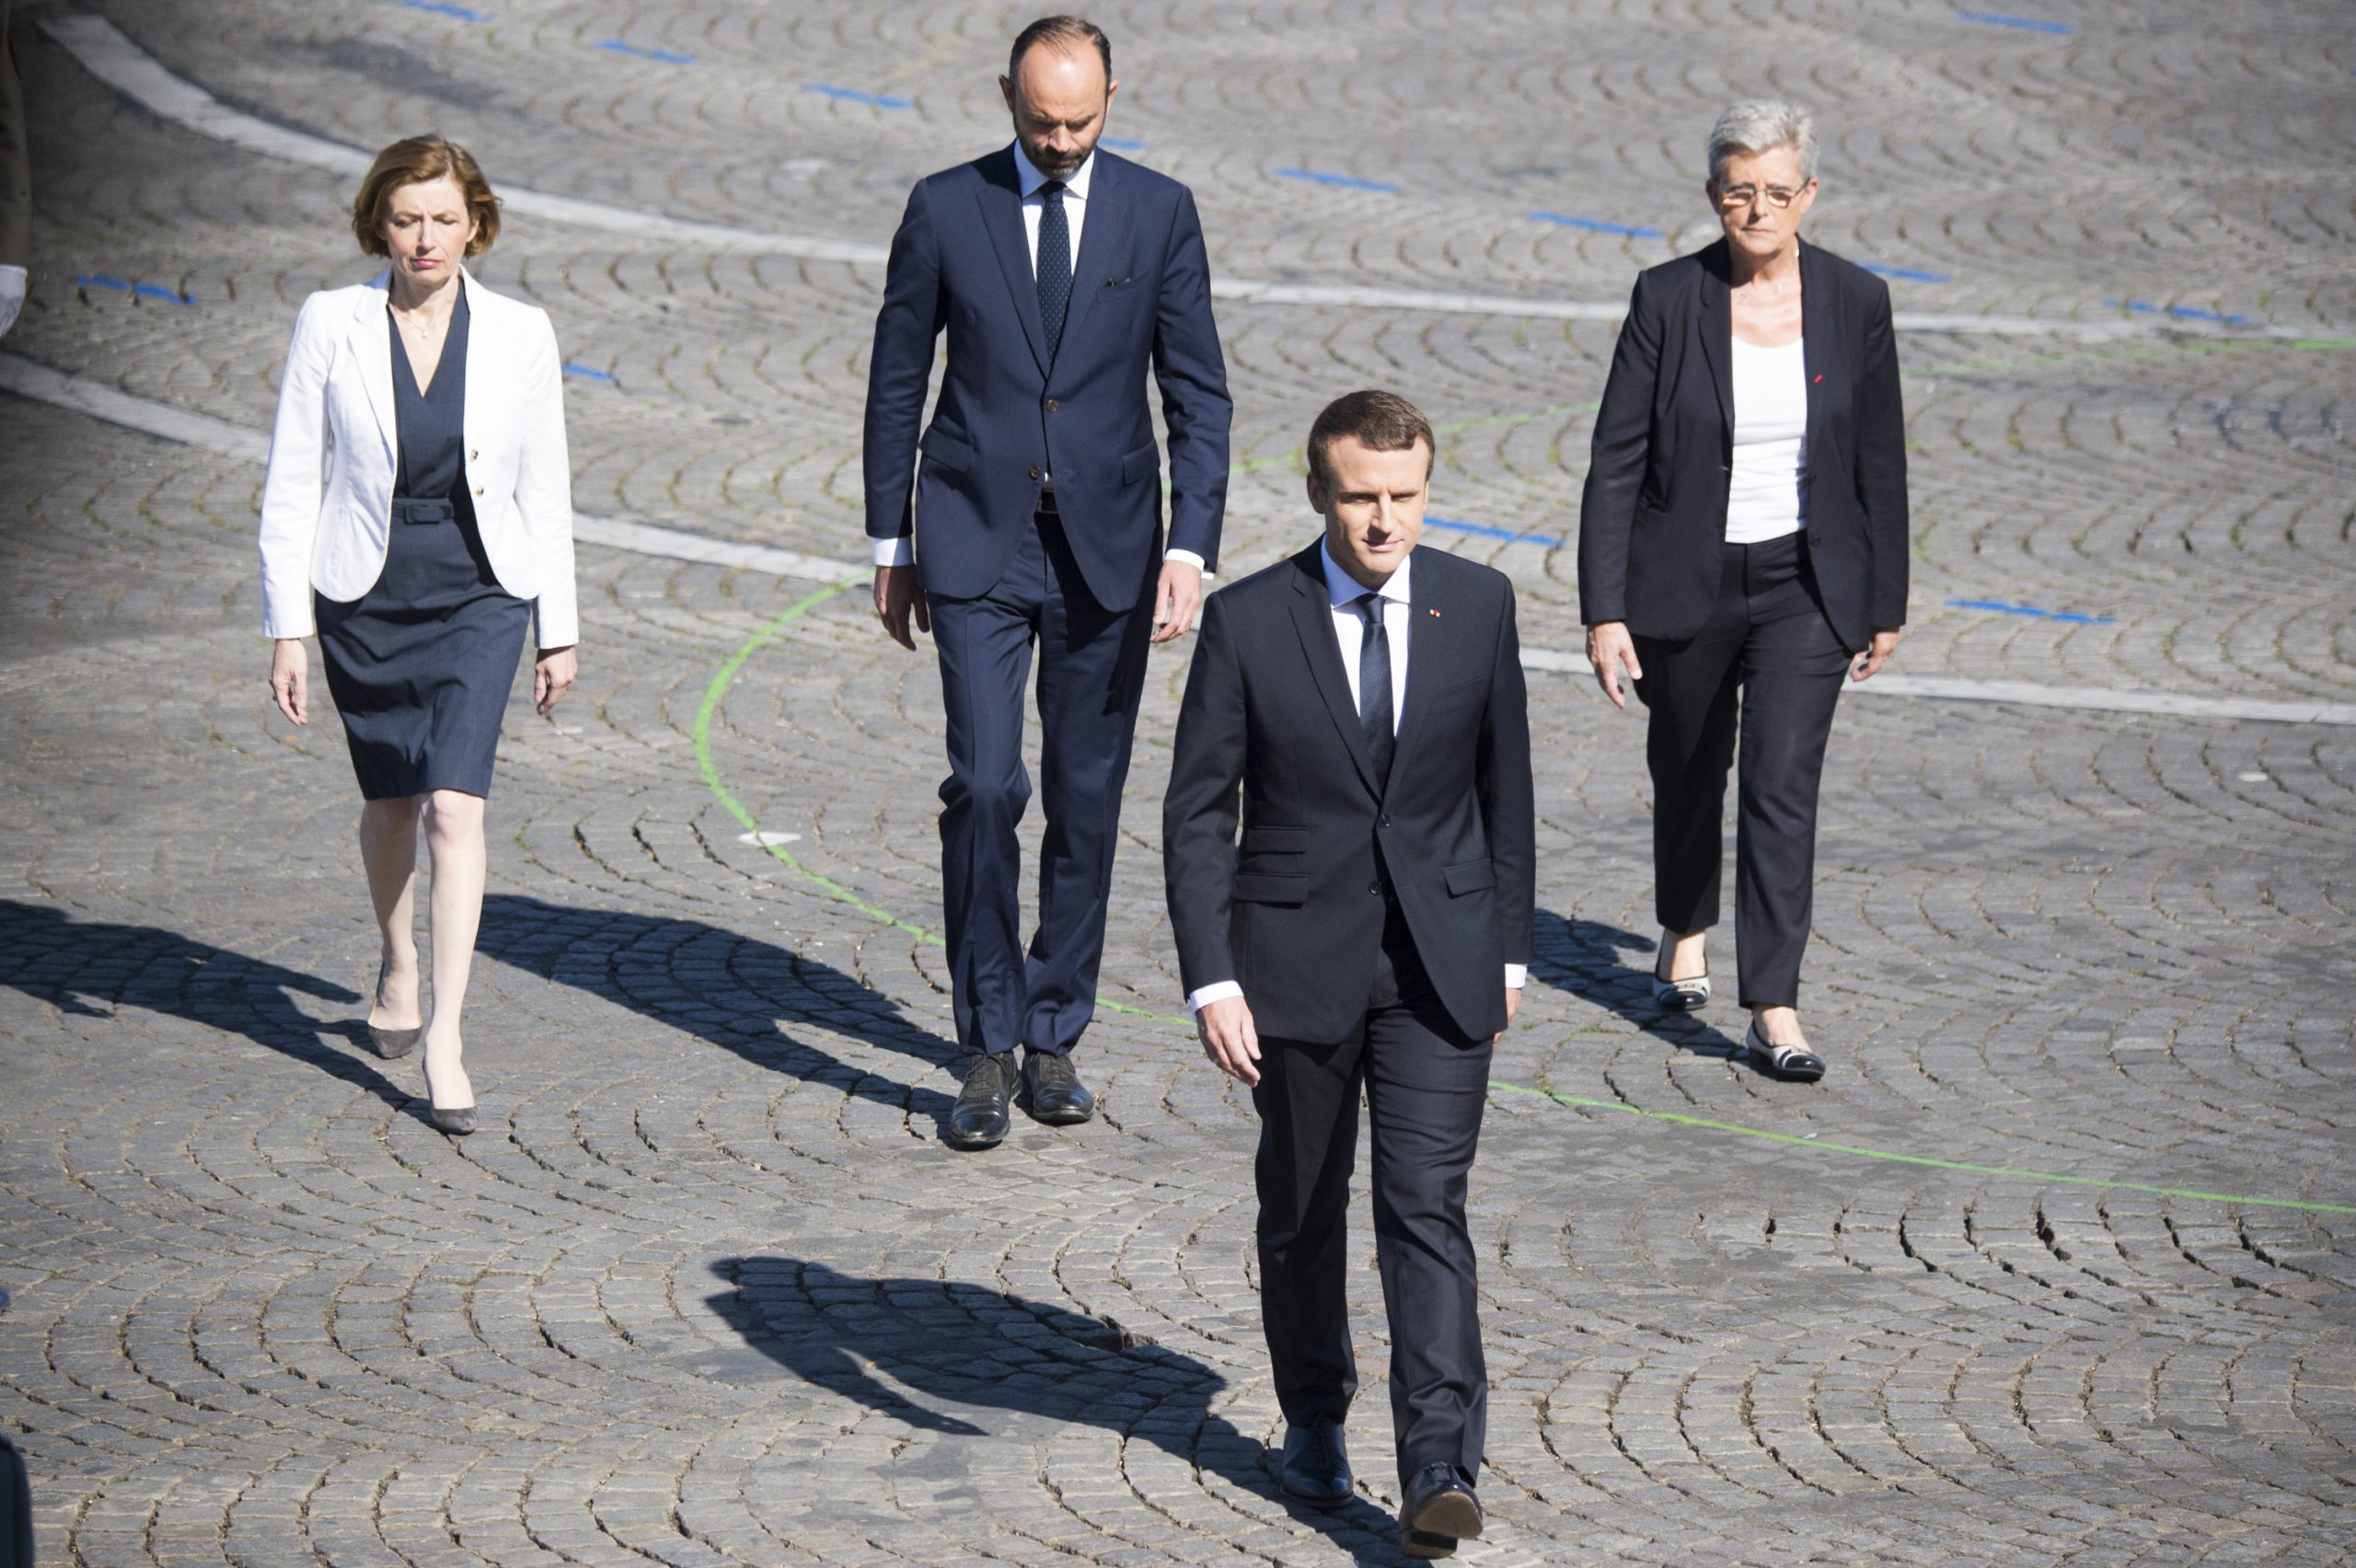 La politique économique et sociale de Macron suscite l’inquiétude des Français